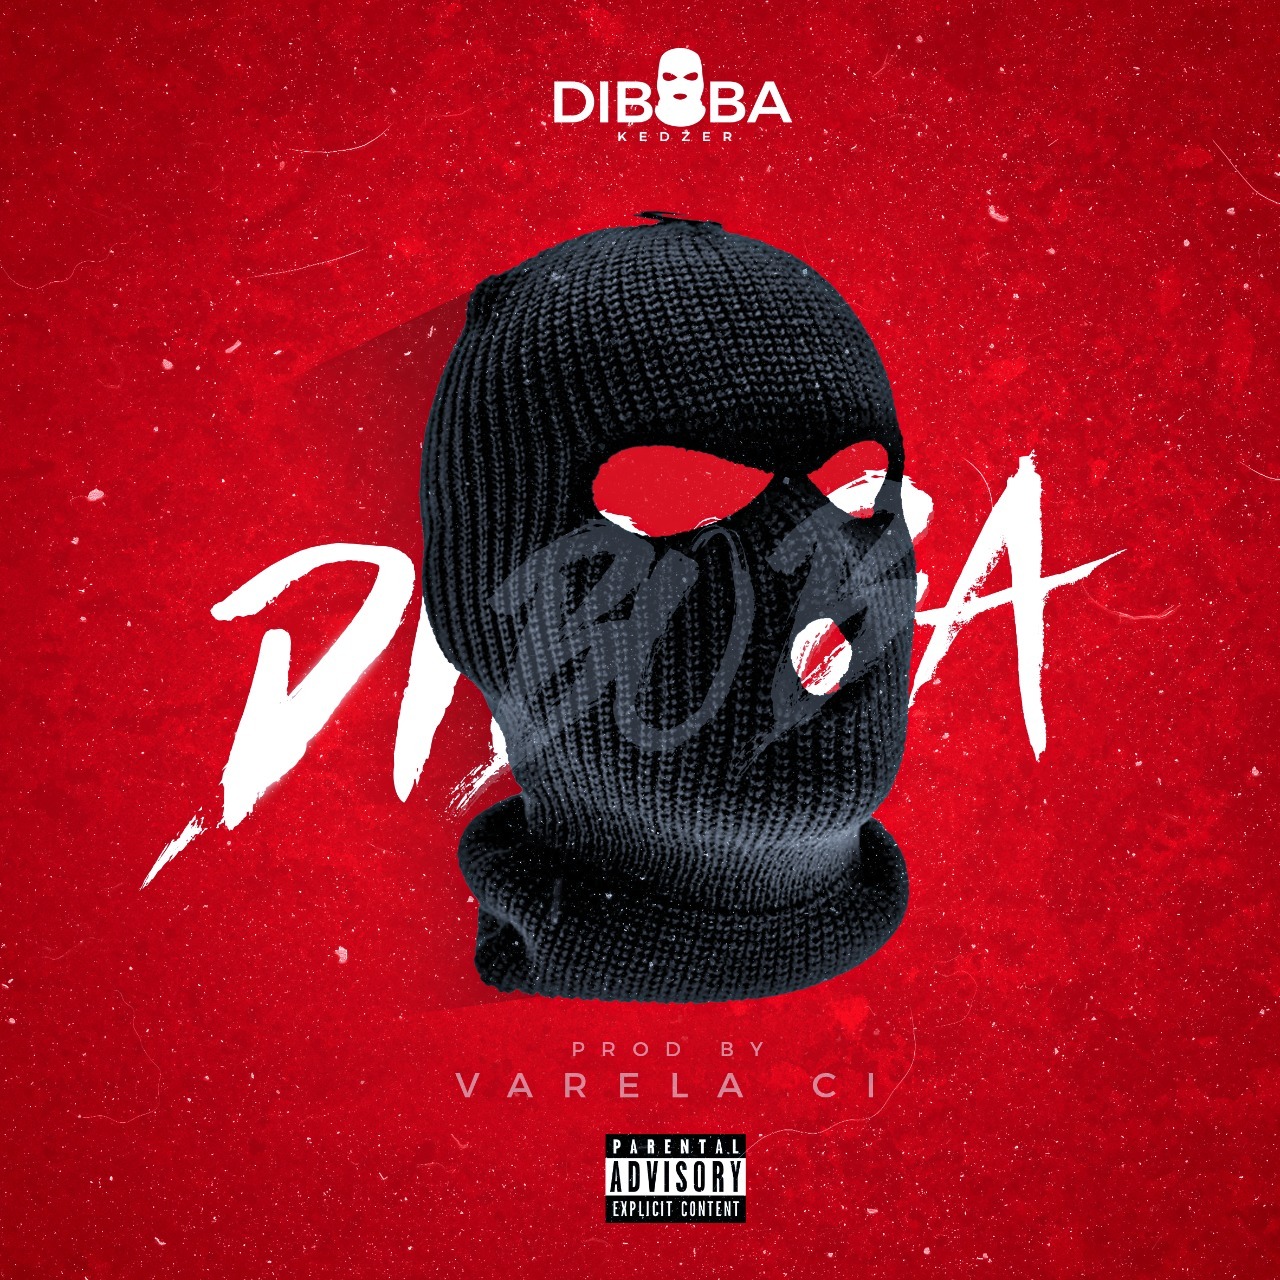 Diboba – Tá Onde (feat. Dj Yordane)